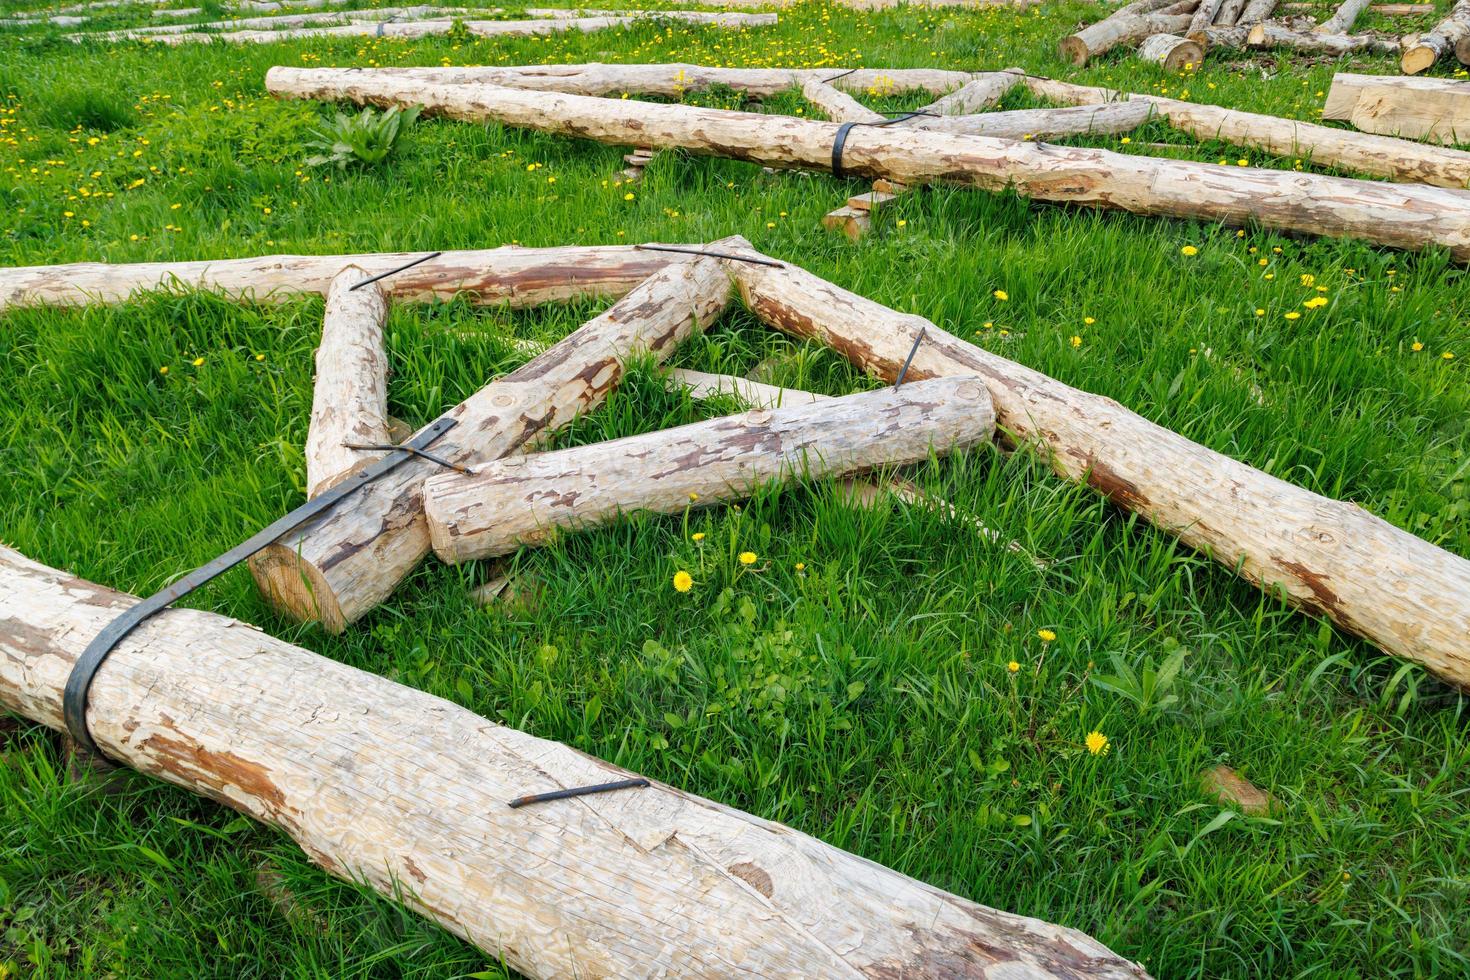 conexión de banda de acero forjado de vigas de troncos de madera para el marco de la viga de soporte del techo colocado sobre hierba verde en el día de verano foto